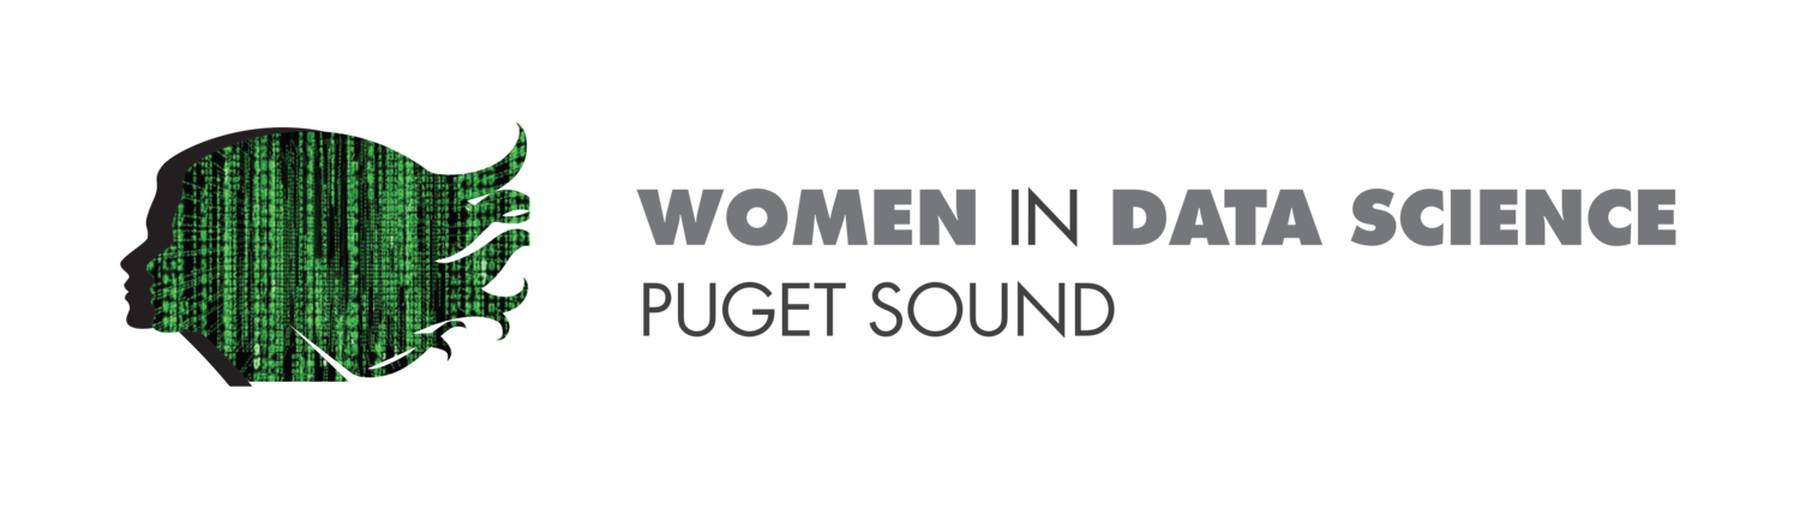 Women in Data Science Puget Sound 2020